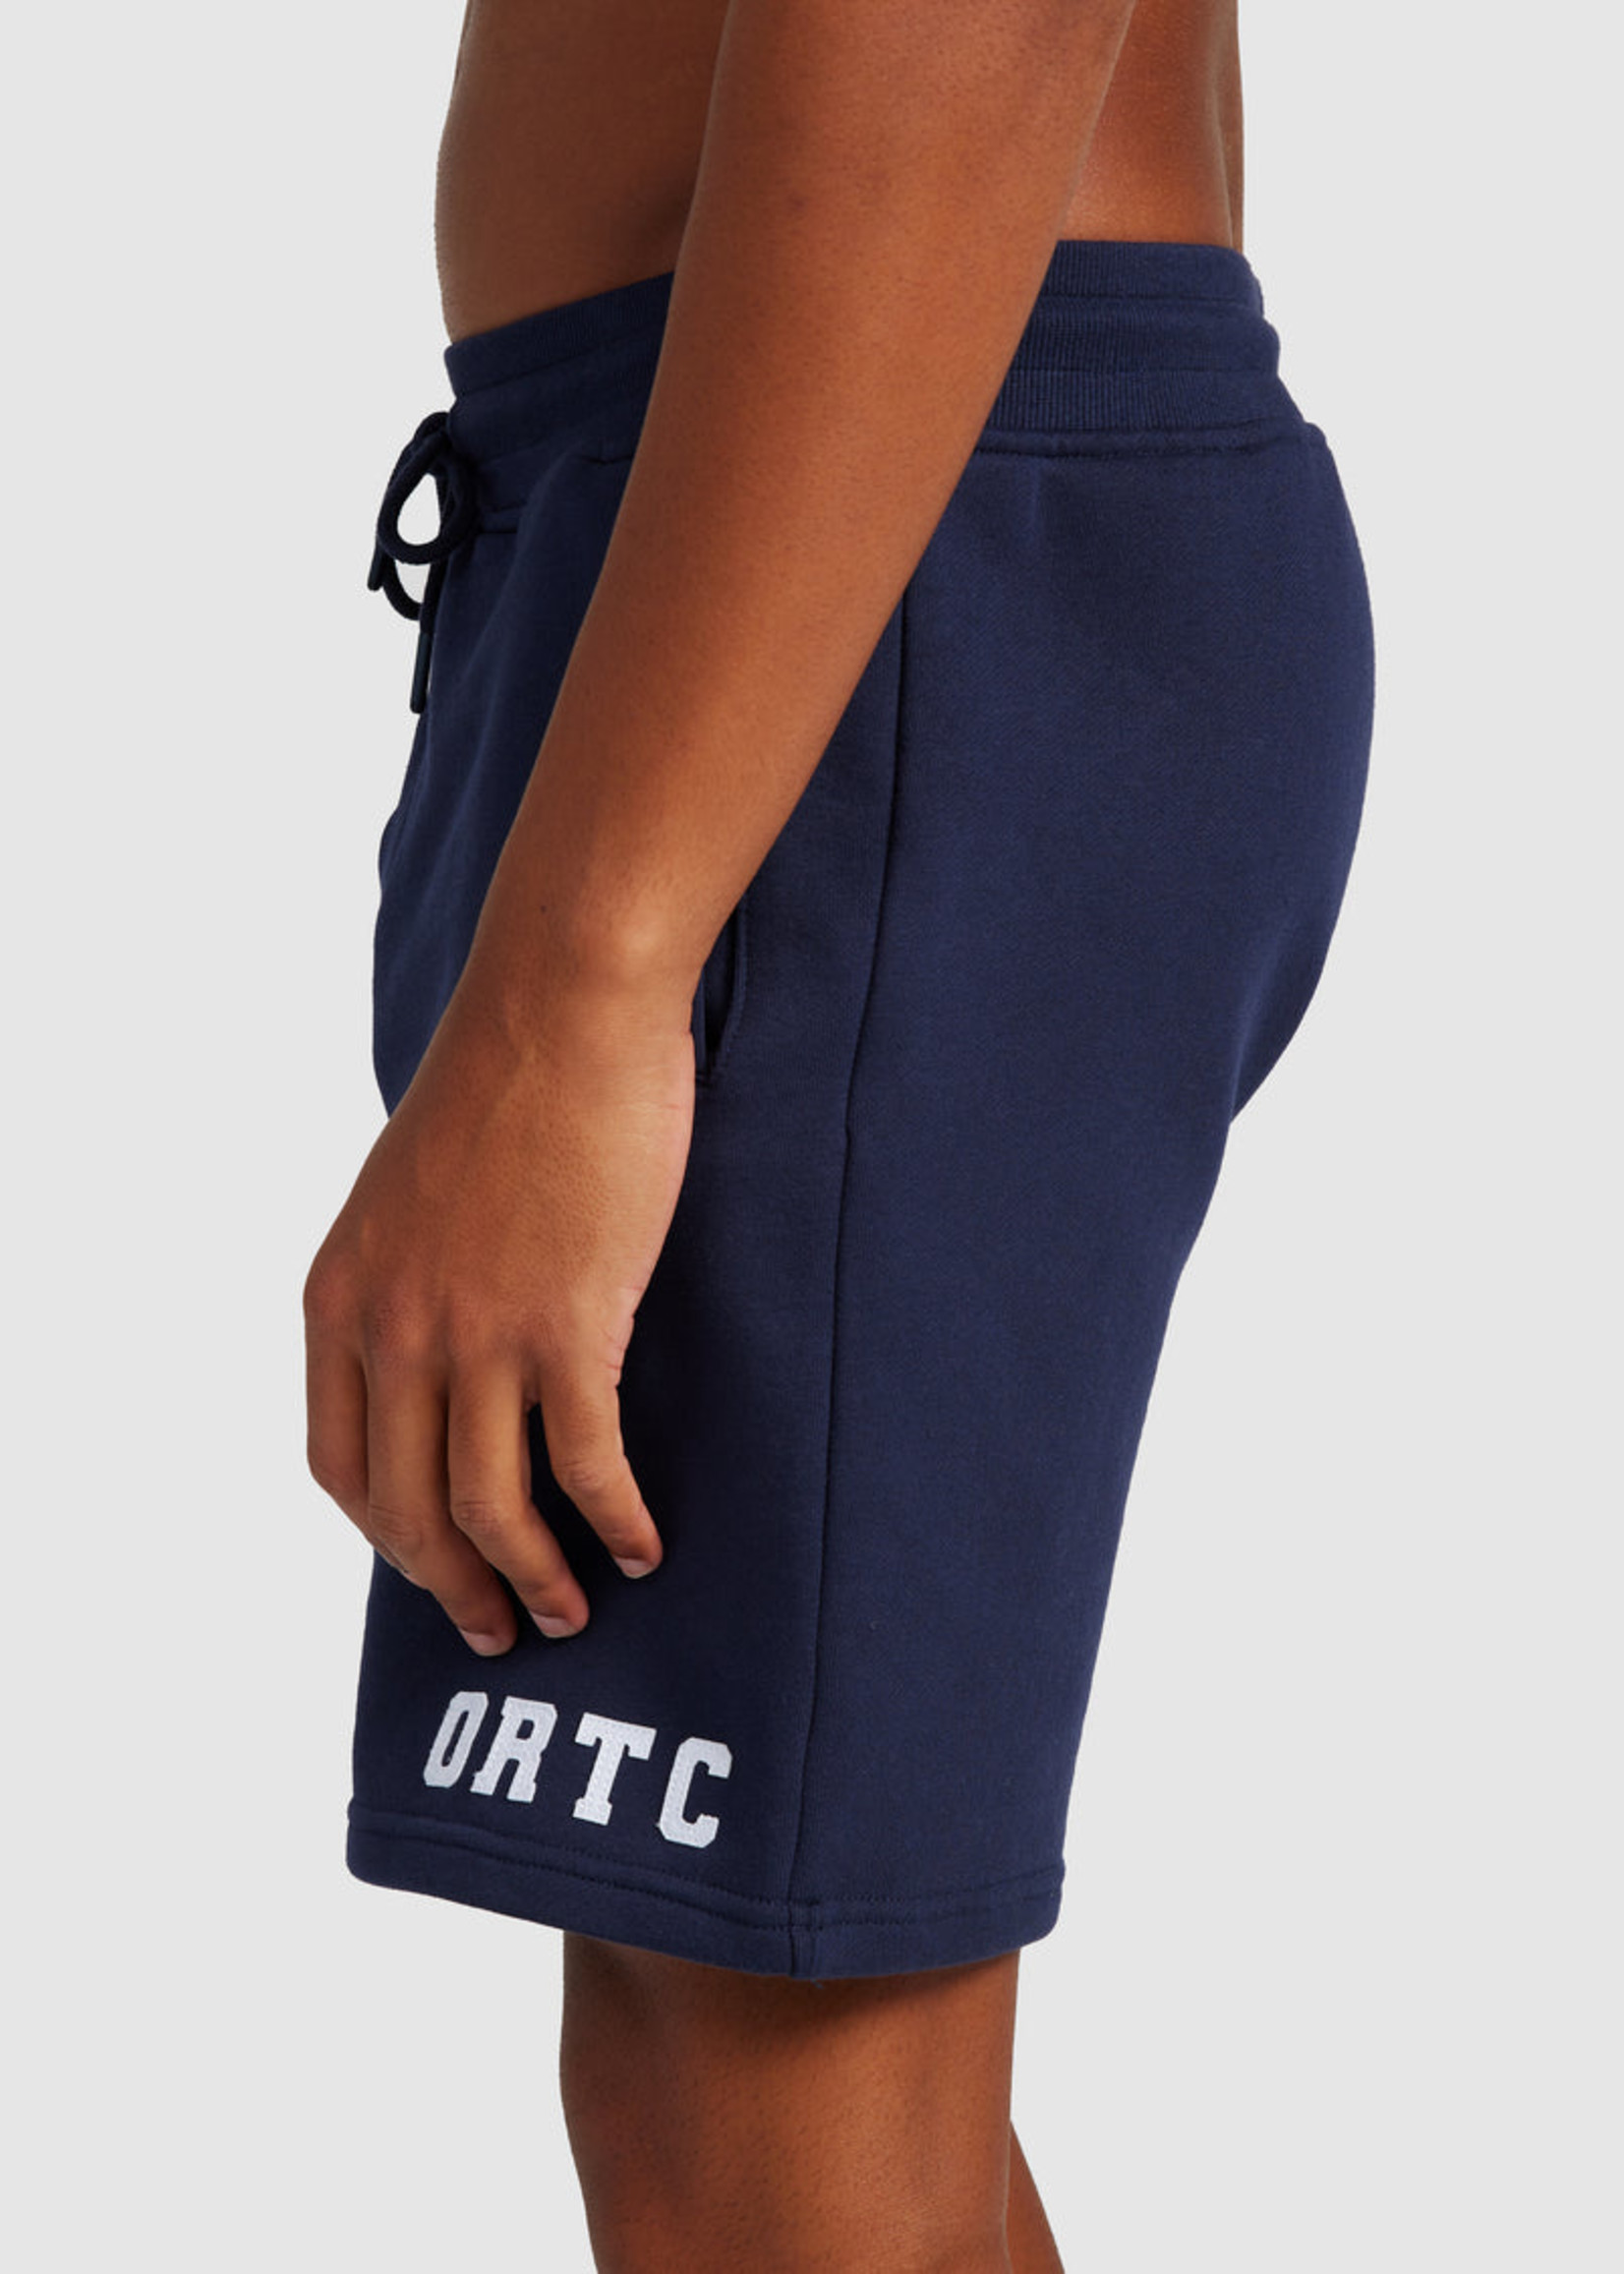 ORTC Lounge Shorts